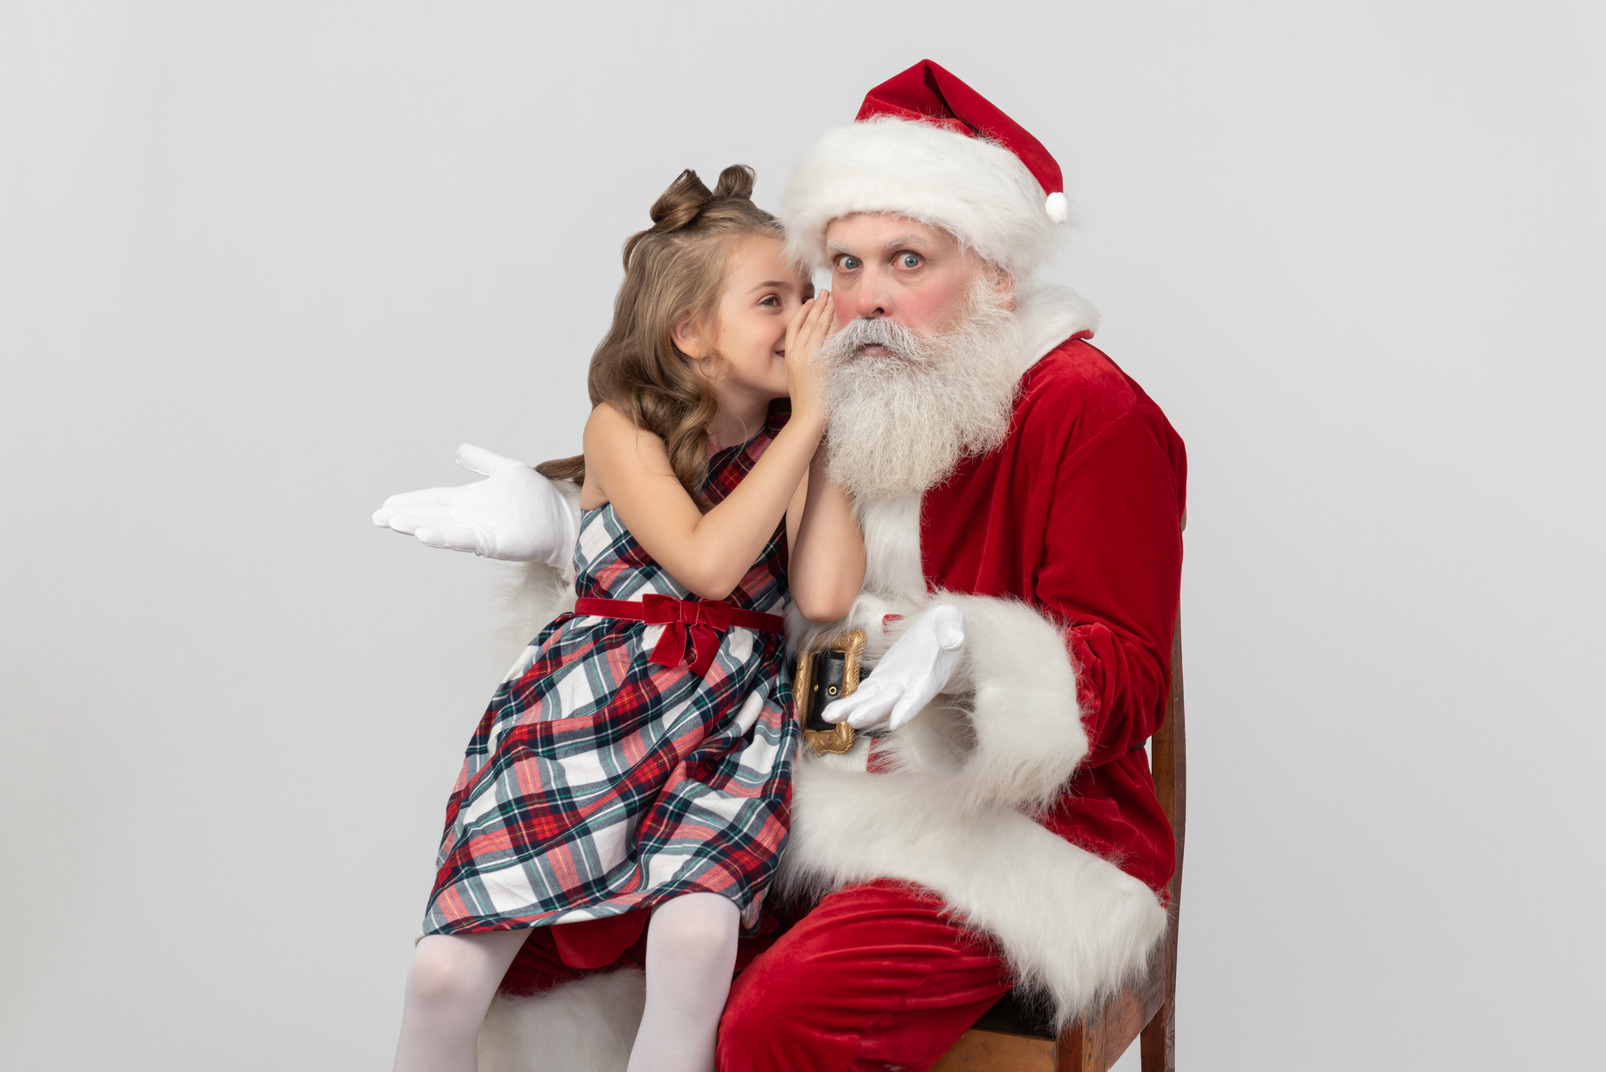 Kid girl whispering something on santa's ears